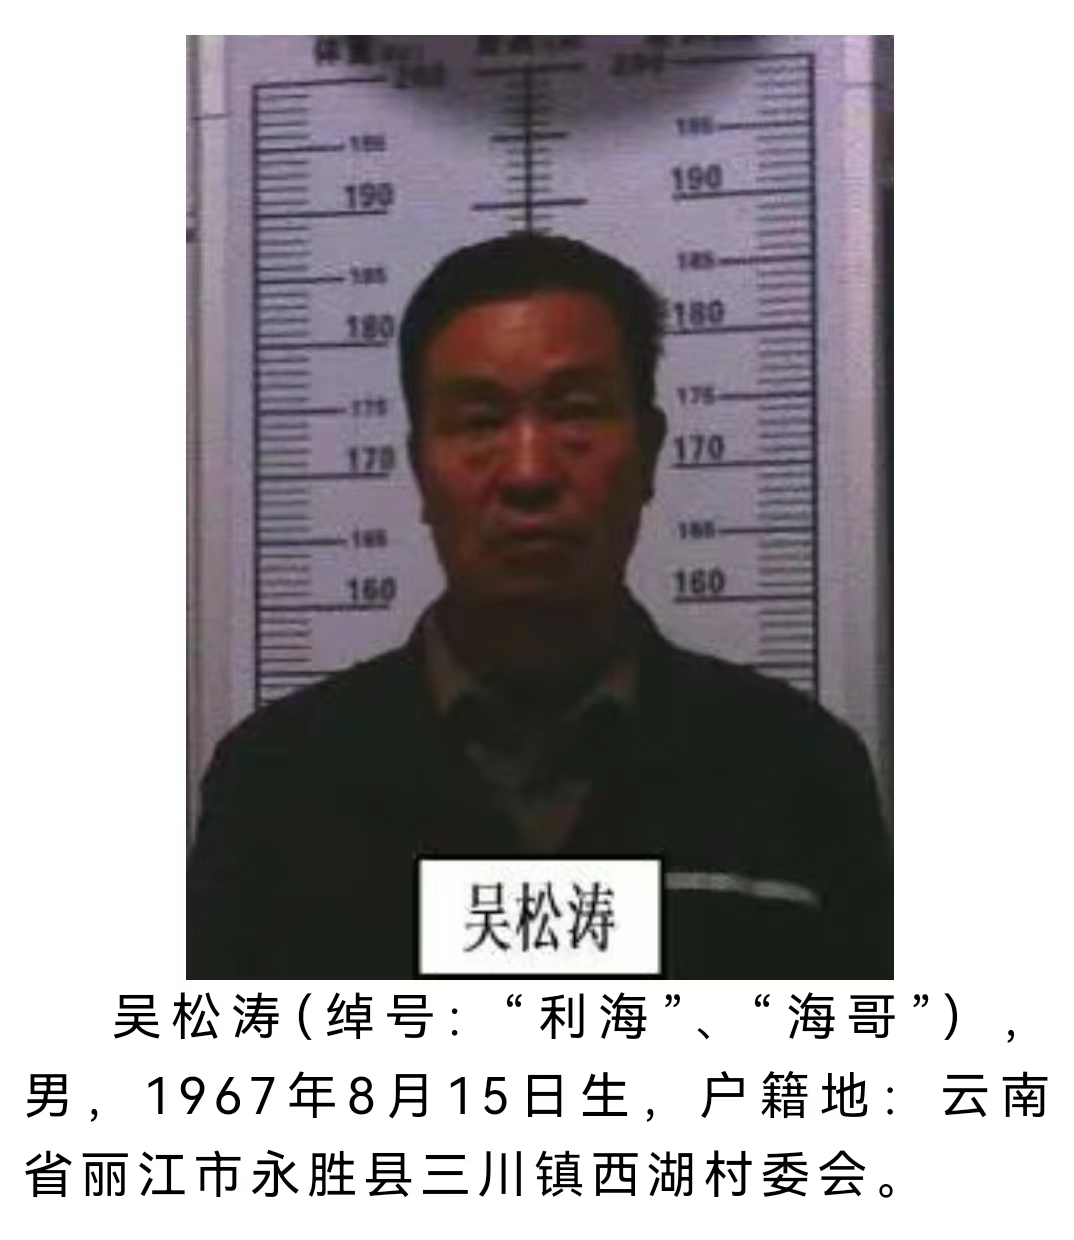 丽江警方公开征集该犯罪团伙犯罪线索 被欺负过的速来举报 (2).jpg